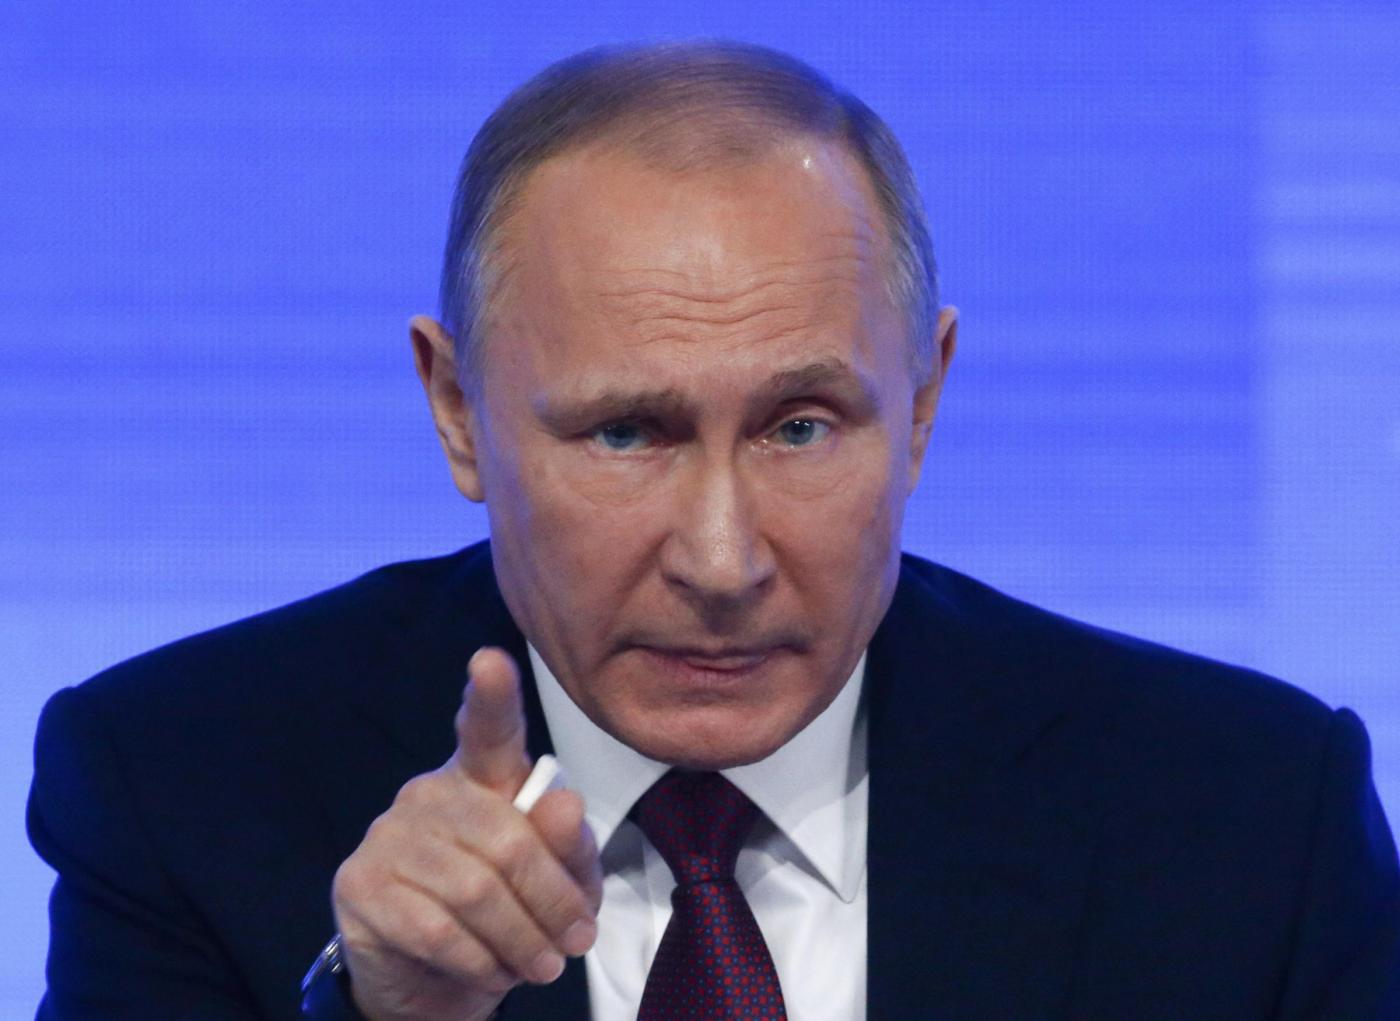 Elezioni USA, report dell’intellingence conferma: ‘Putin dietro agli hacker russi’